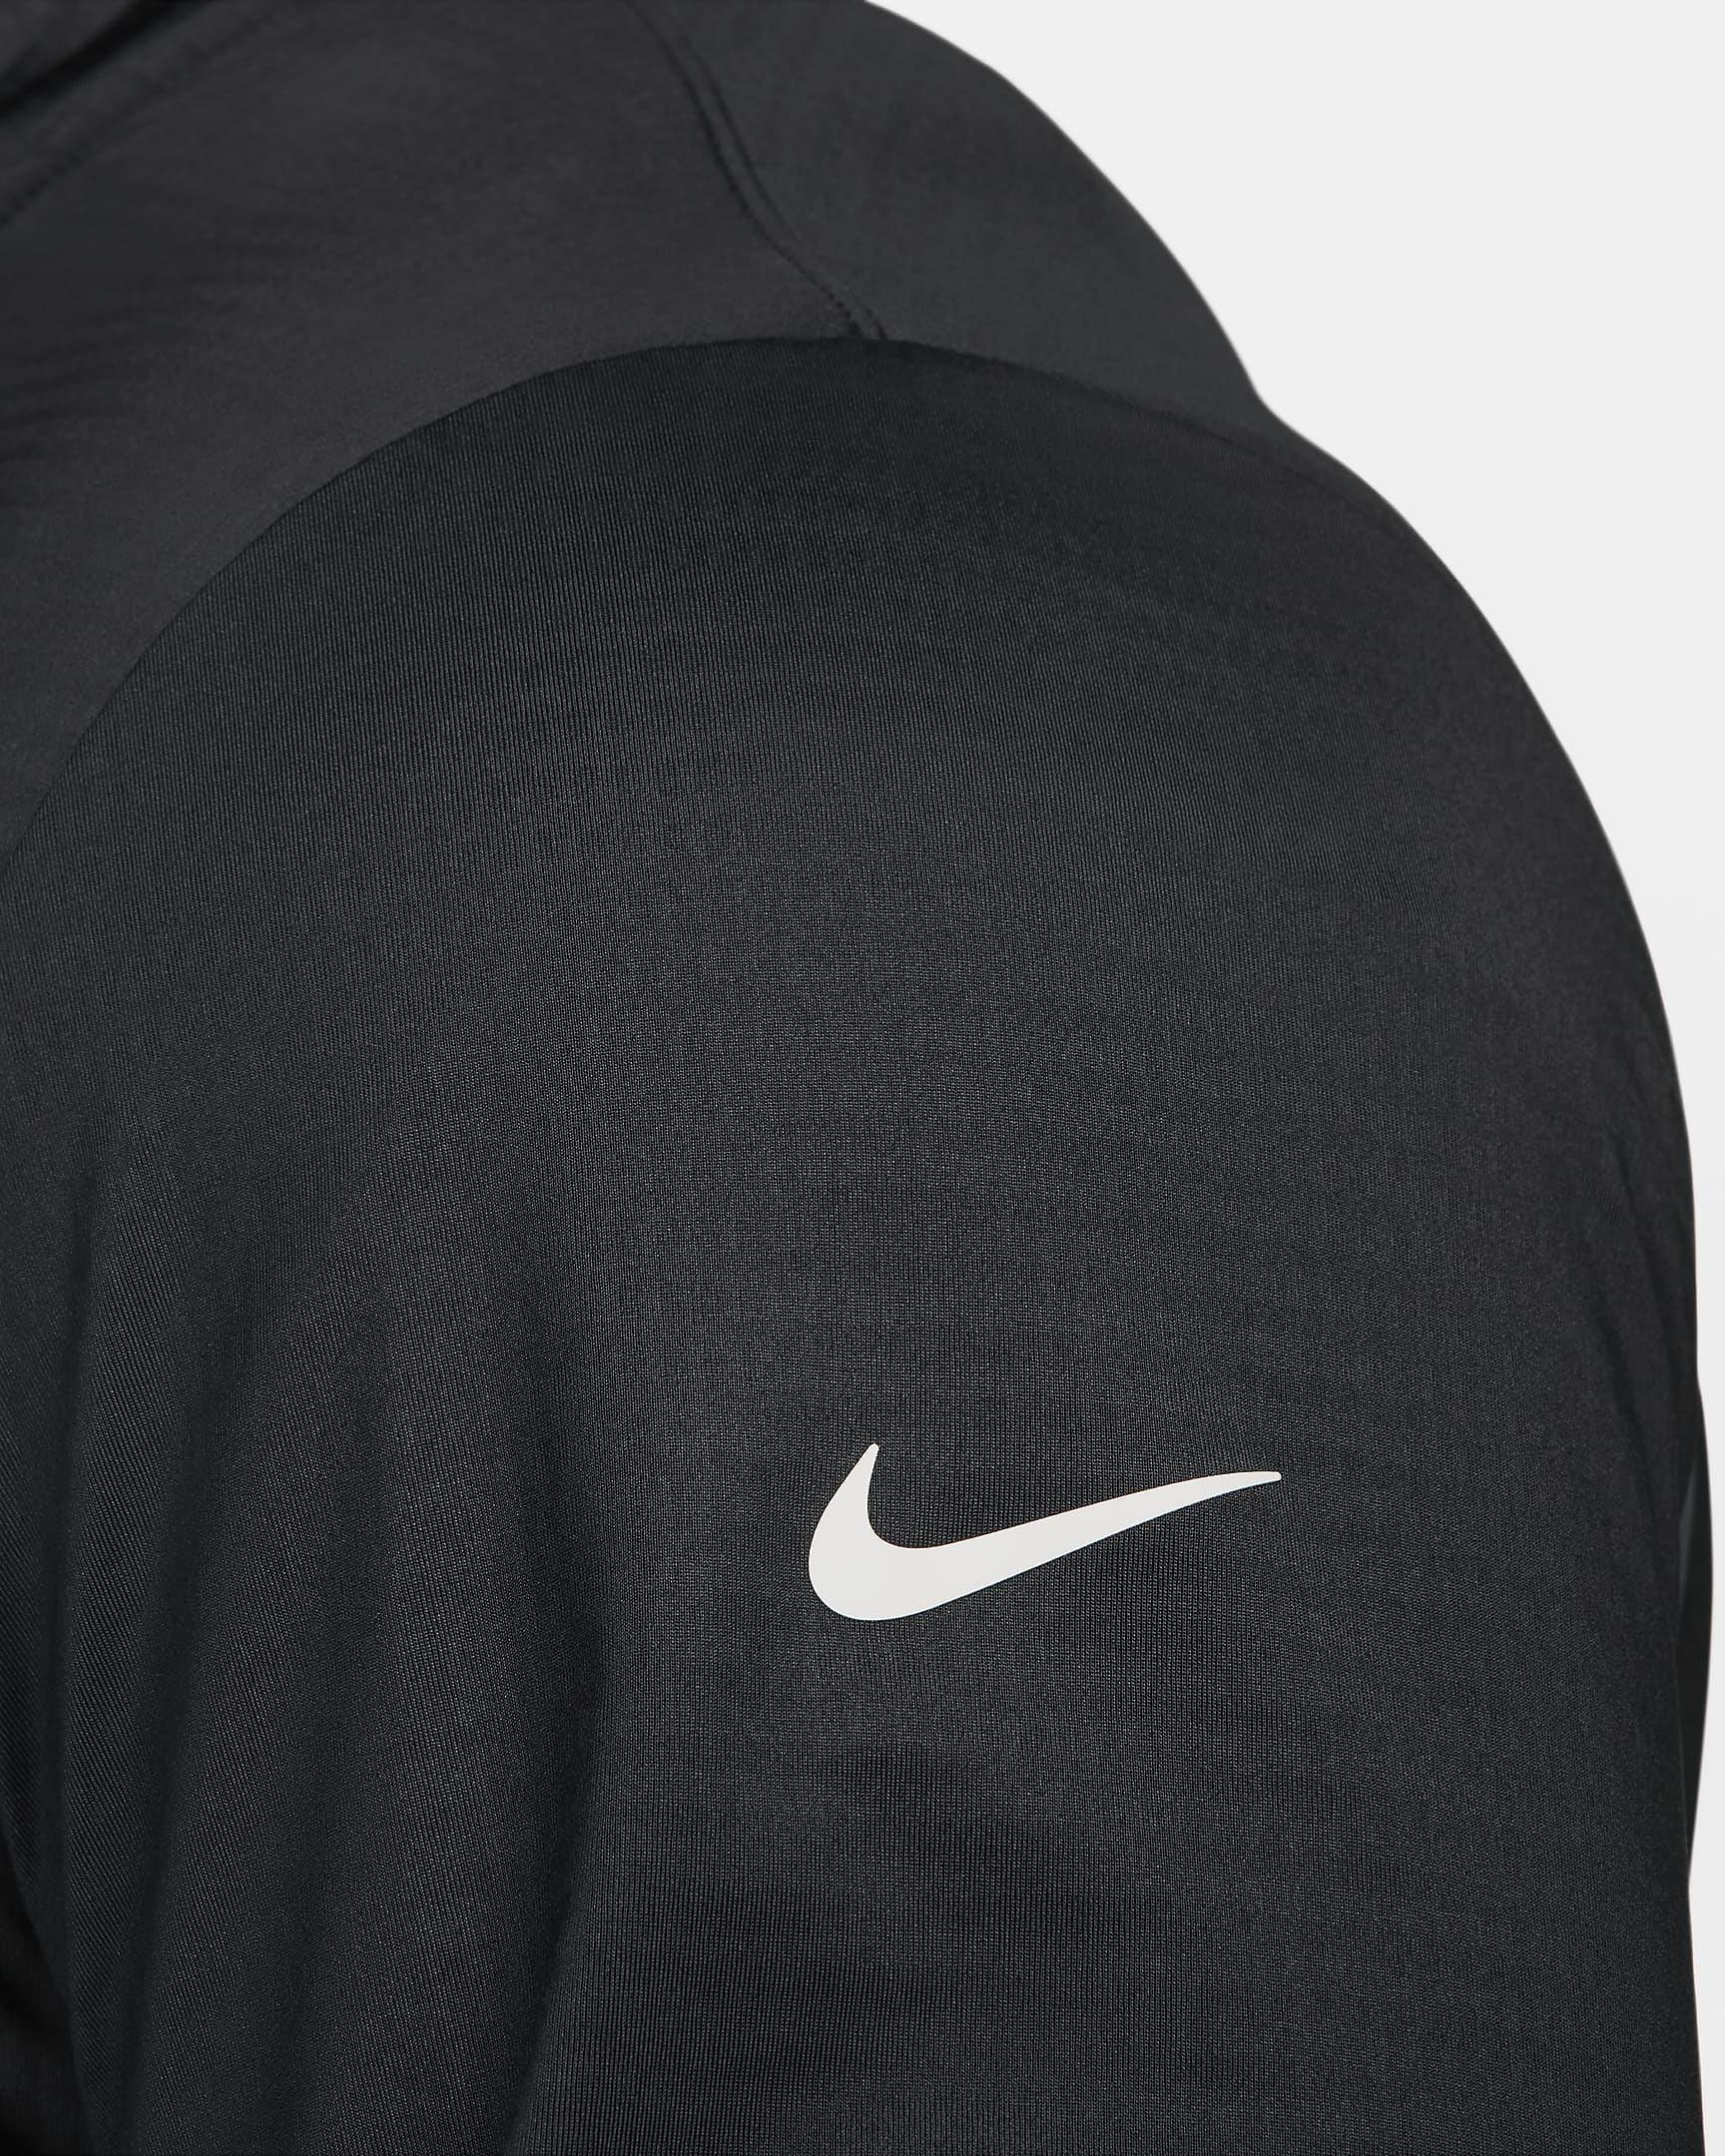 Maglia da golf con zip a metà lunghezza Dri-FIT Nike Victory – Uomo - Nero/Bianco